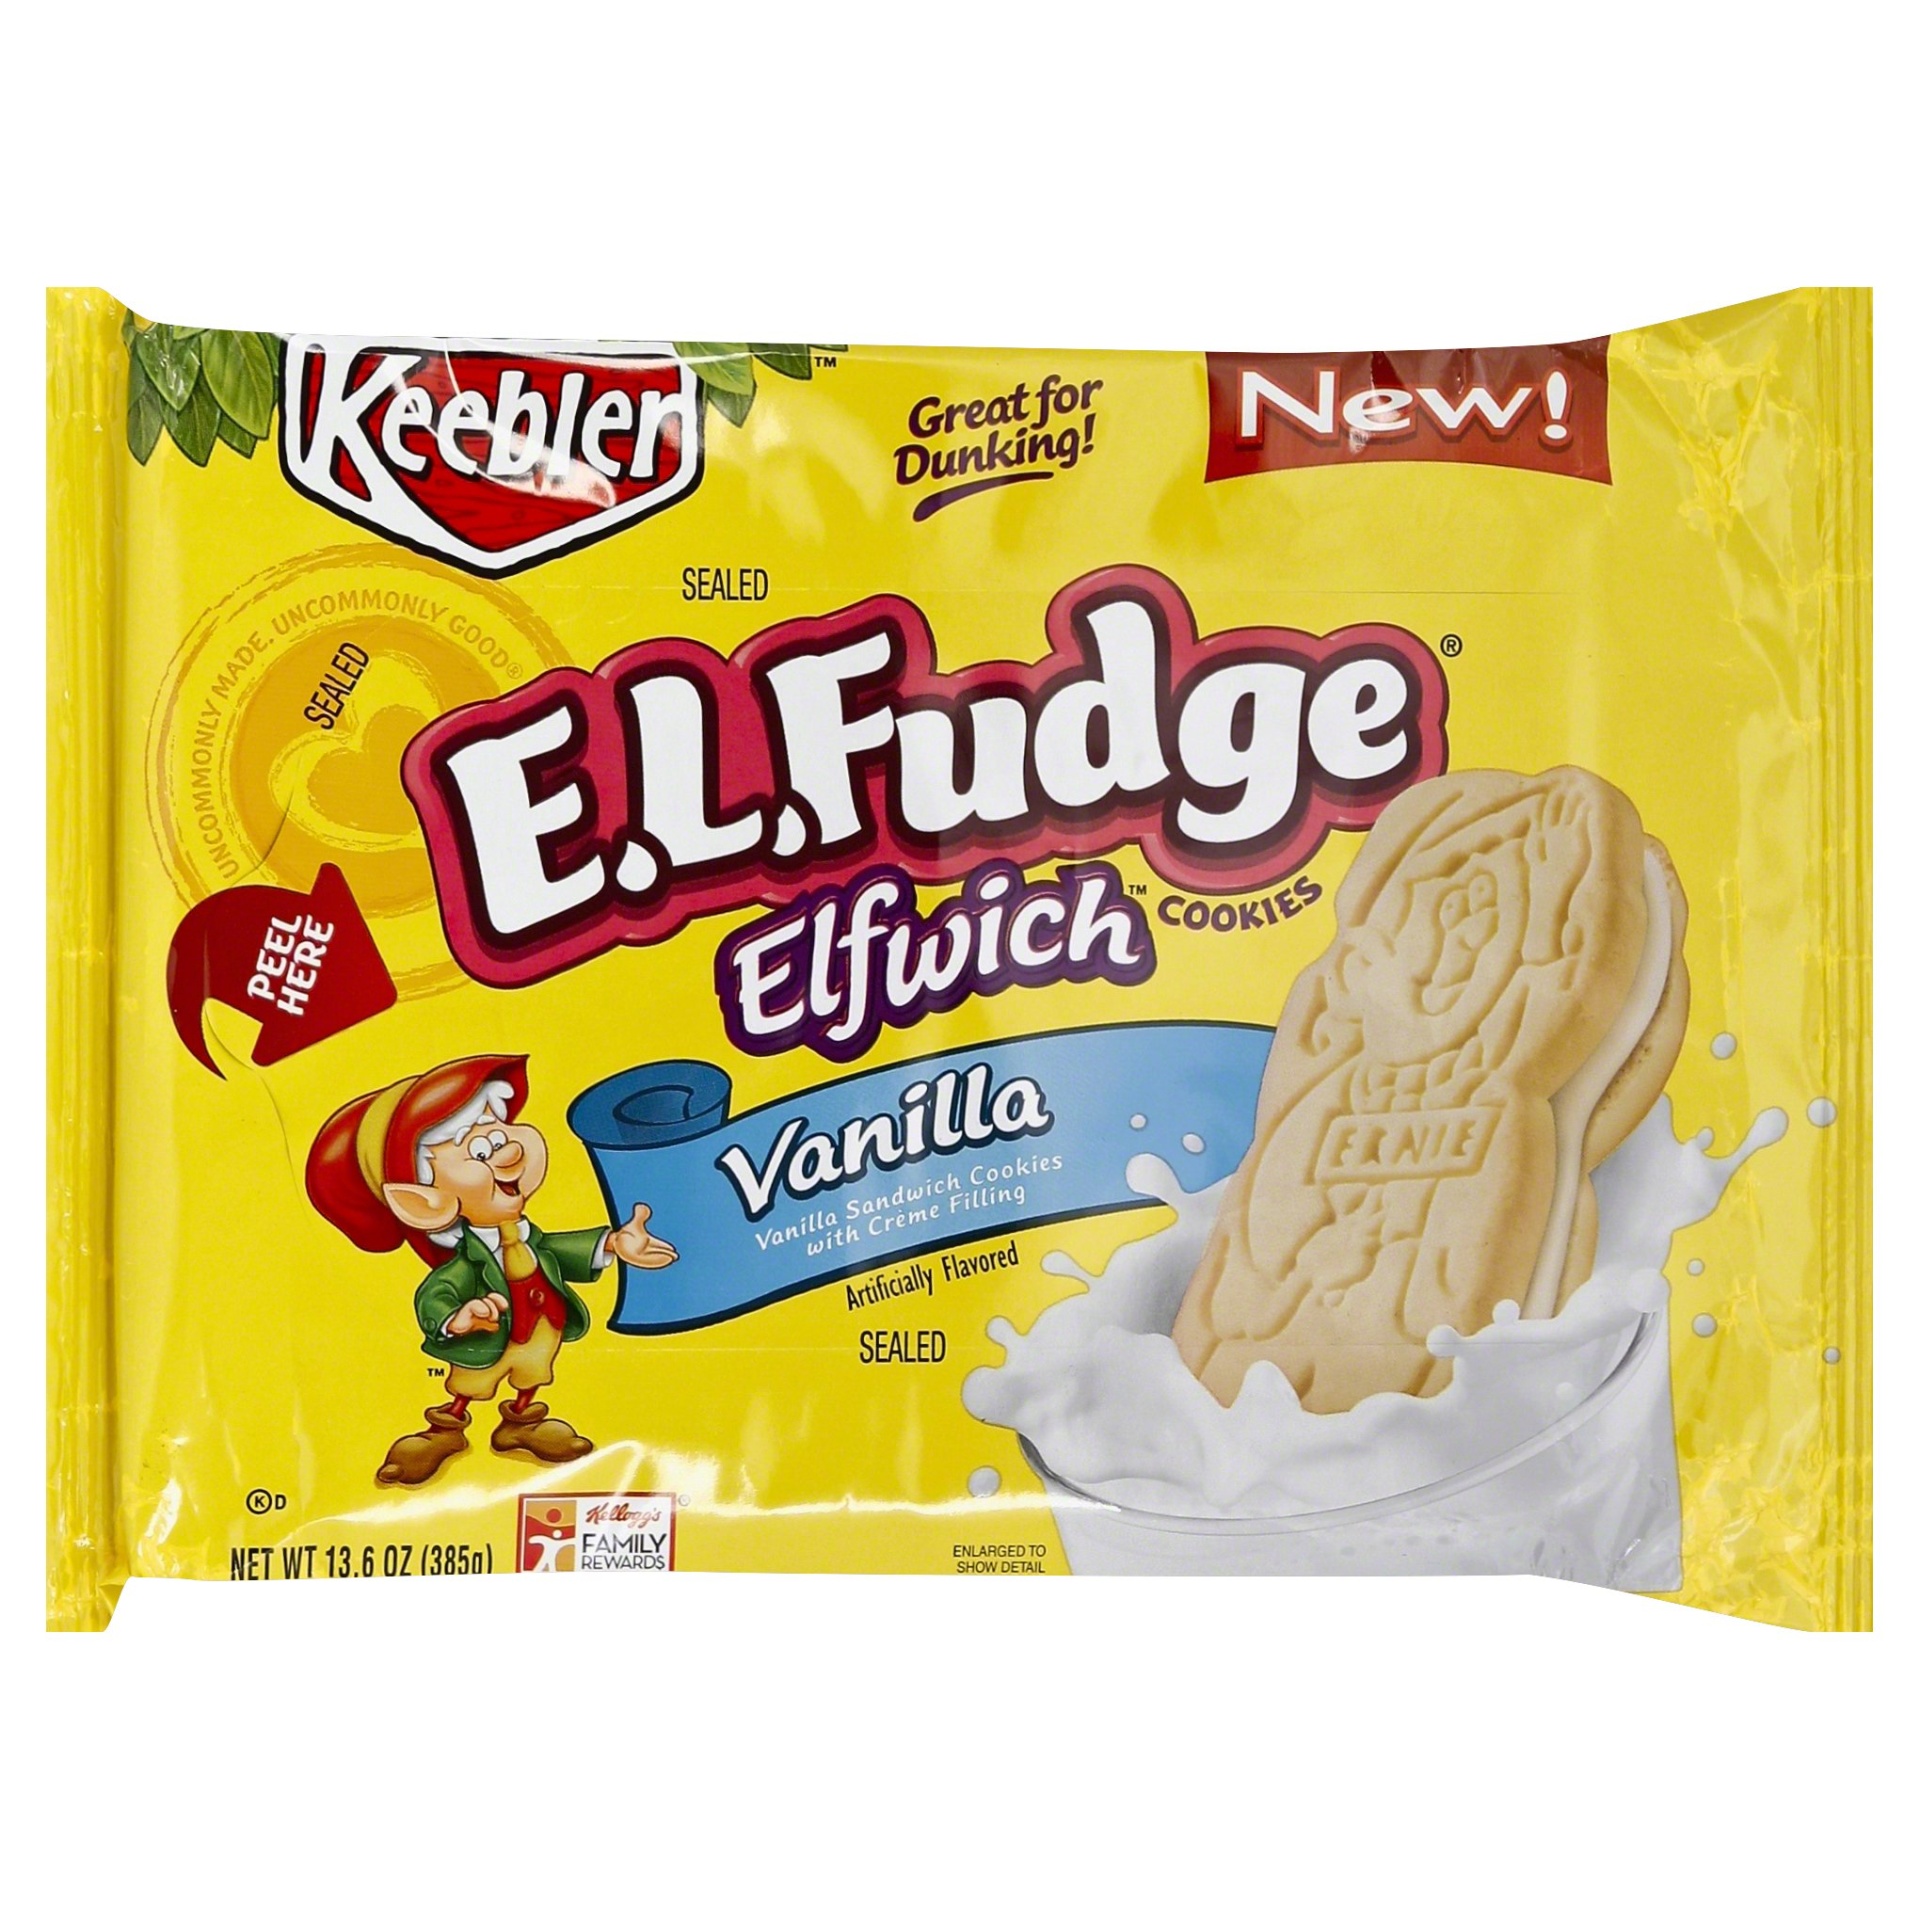 slide 1 of 6, Keebler E.L. Fudge Elfwich Cookies Vanilla, 13.6 oz